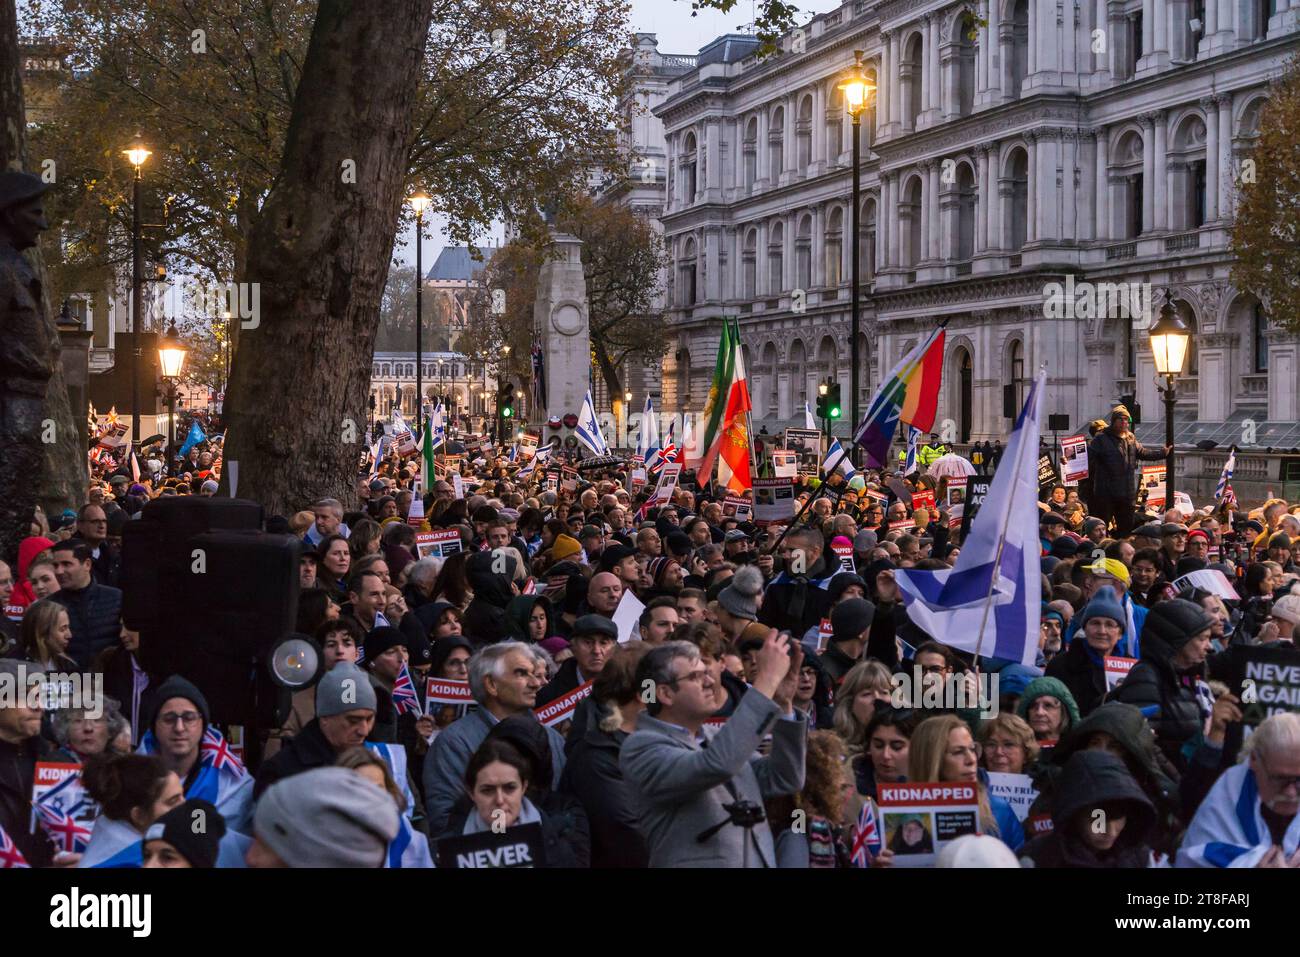 "Never Again is Now" ist eine Gebets- und Protestveranstaltung in Whitehall, um Solidarität mit dem jüdischen Volk auszudrücken und sich gegen Antisemitismus zu wehren. Stockfoto